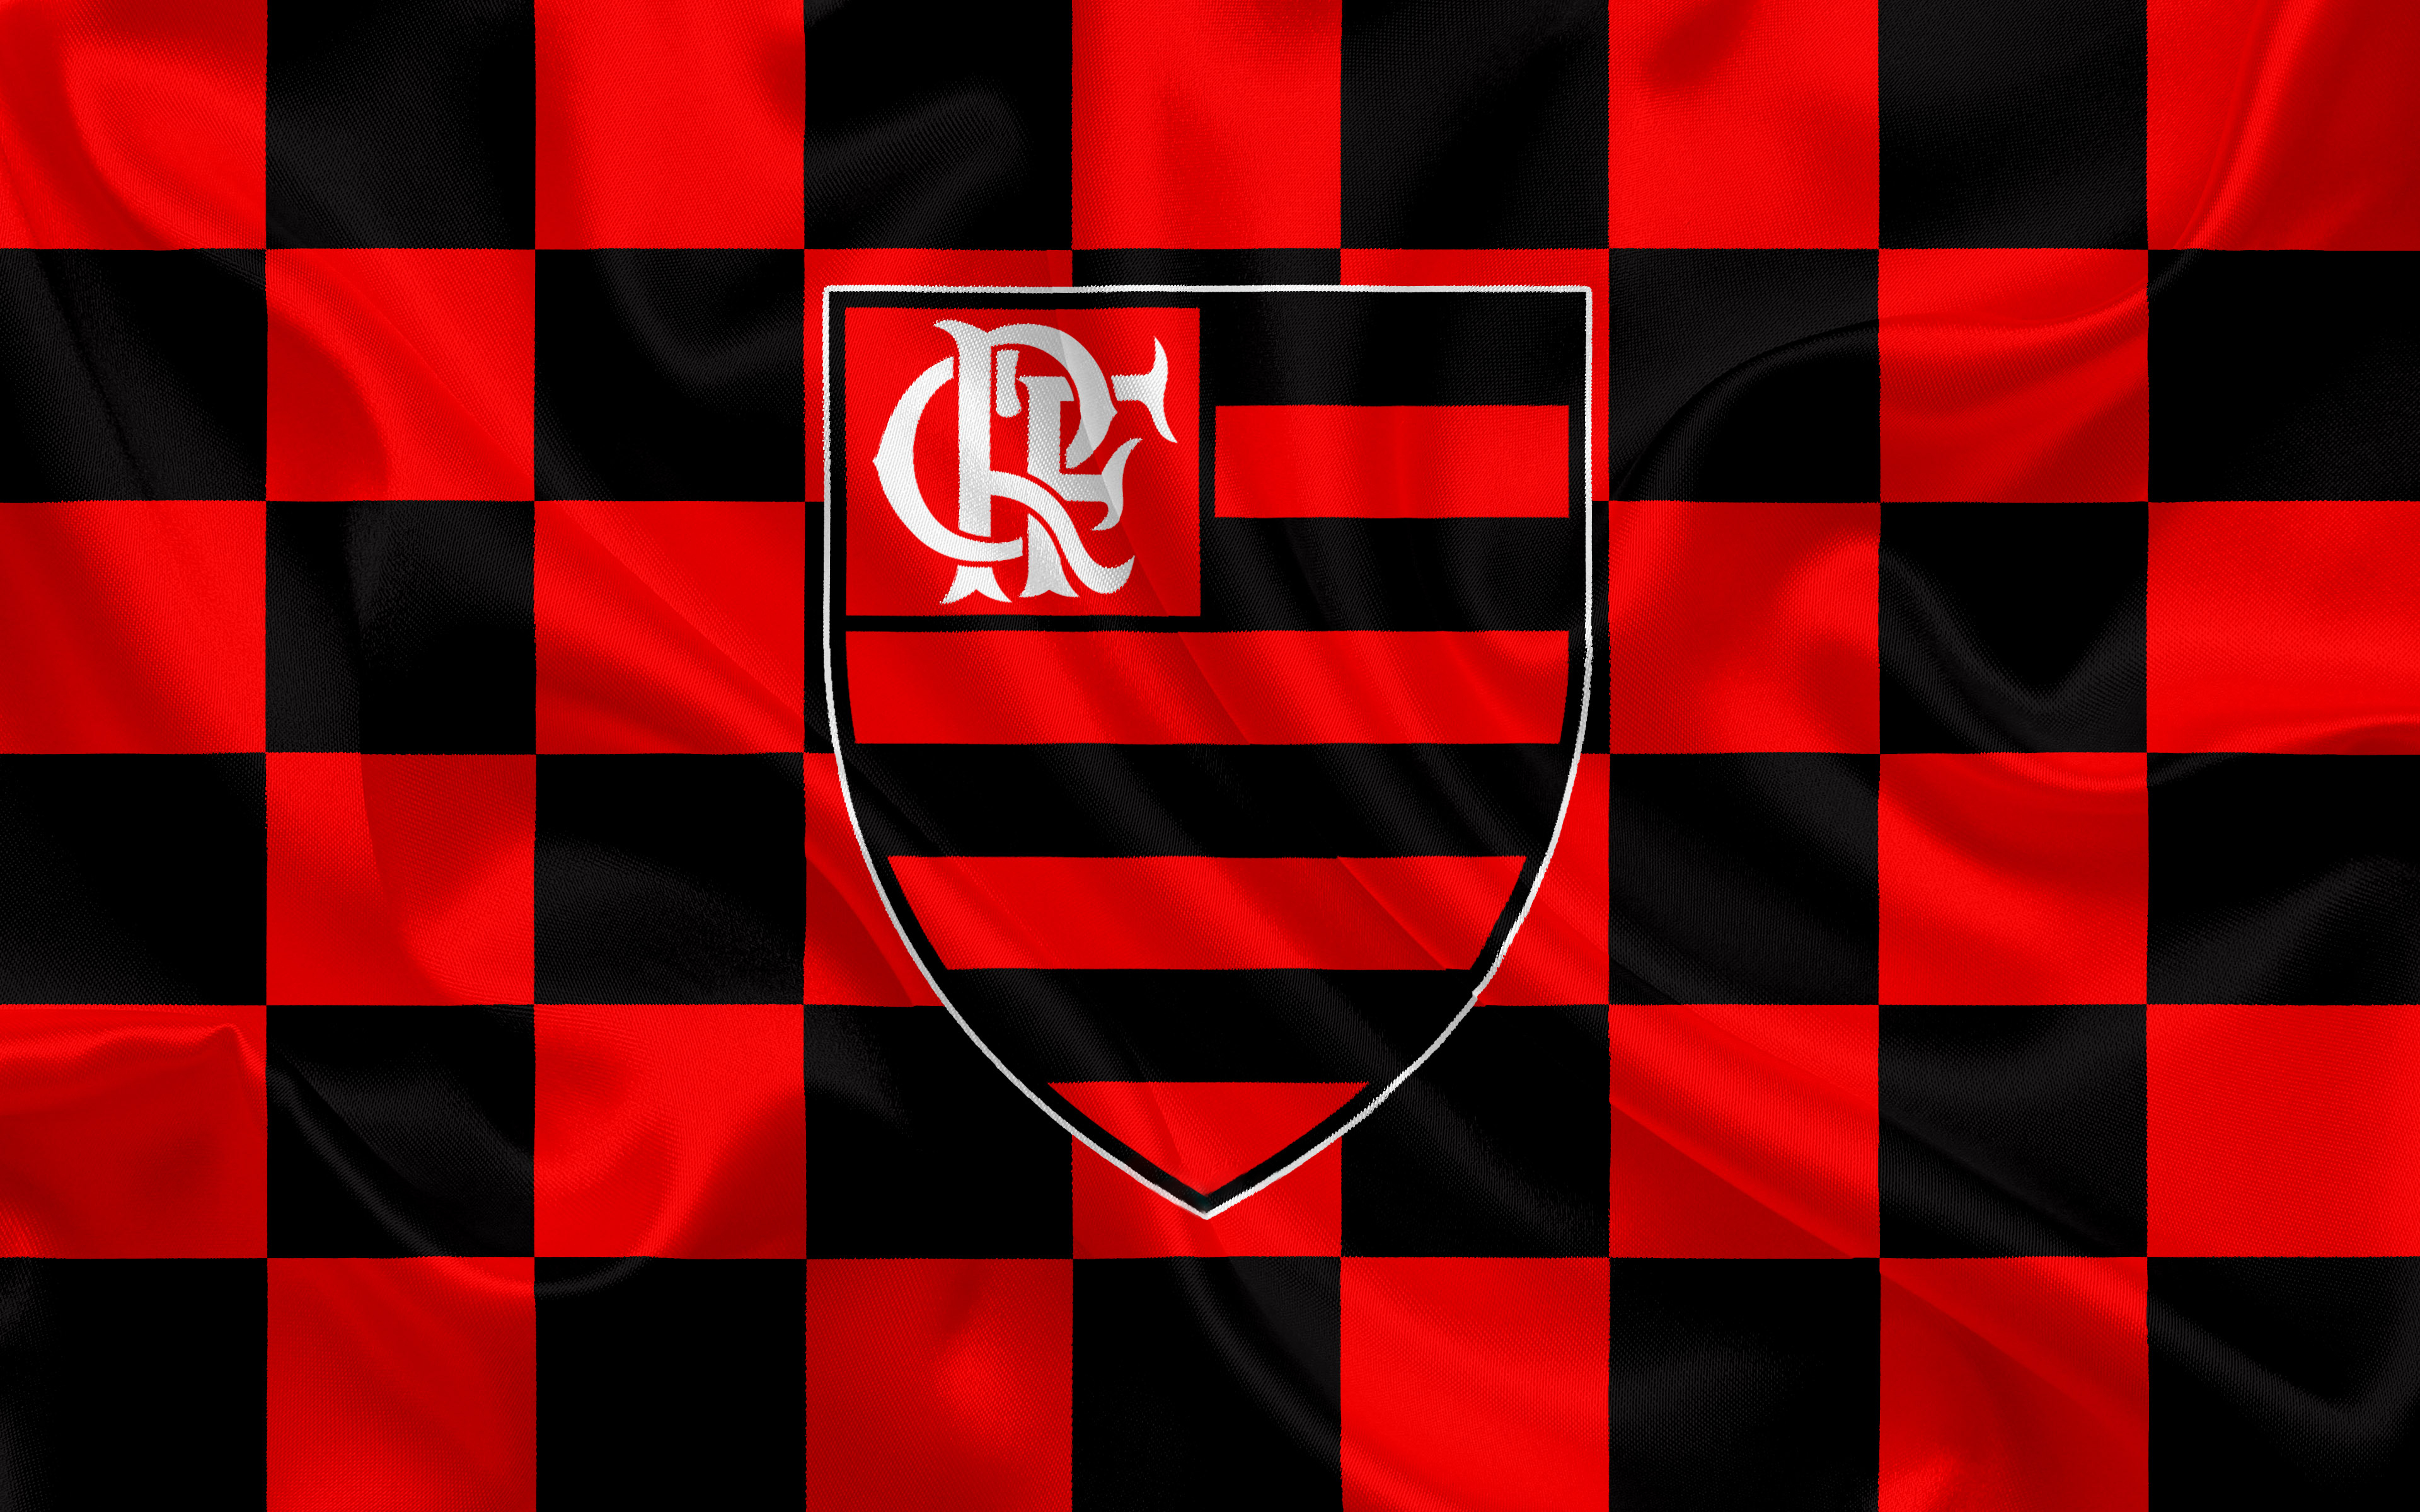 Скачать обои Clube De Regatas Do Flamengo на телефон бесплатно